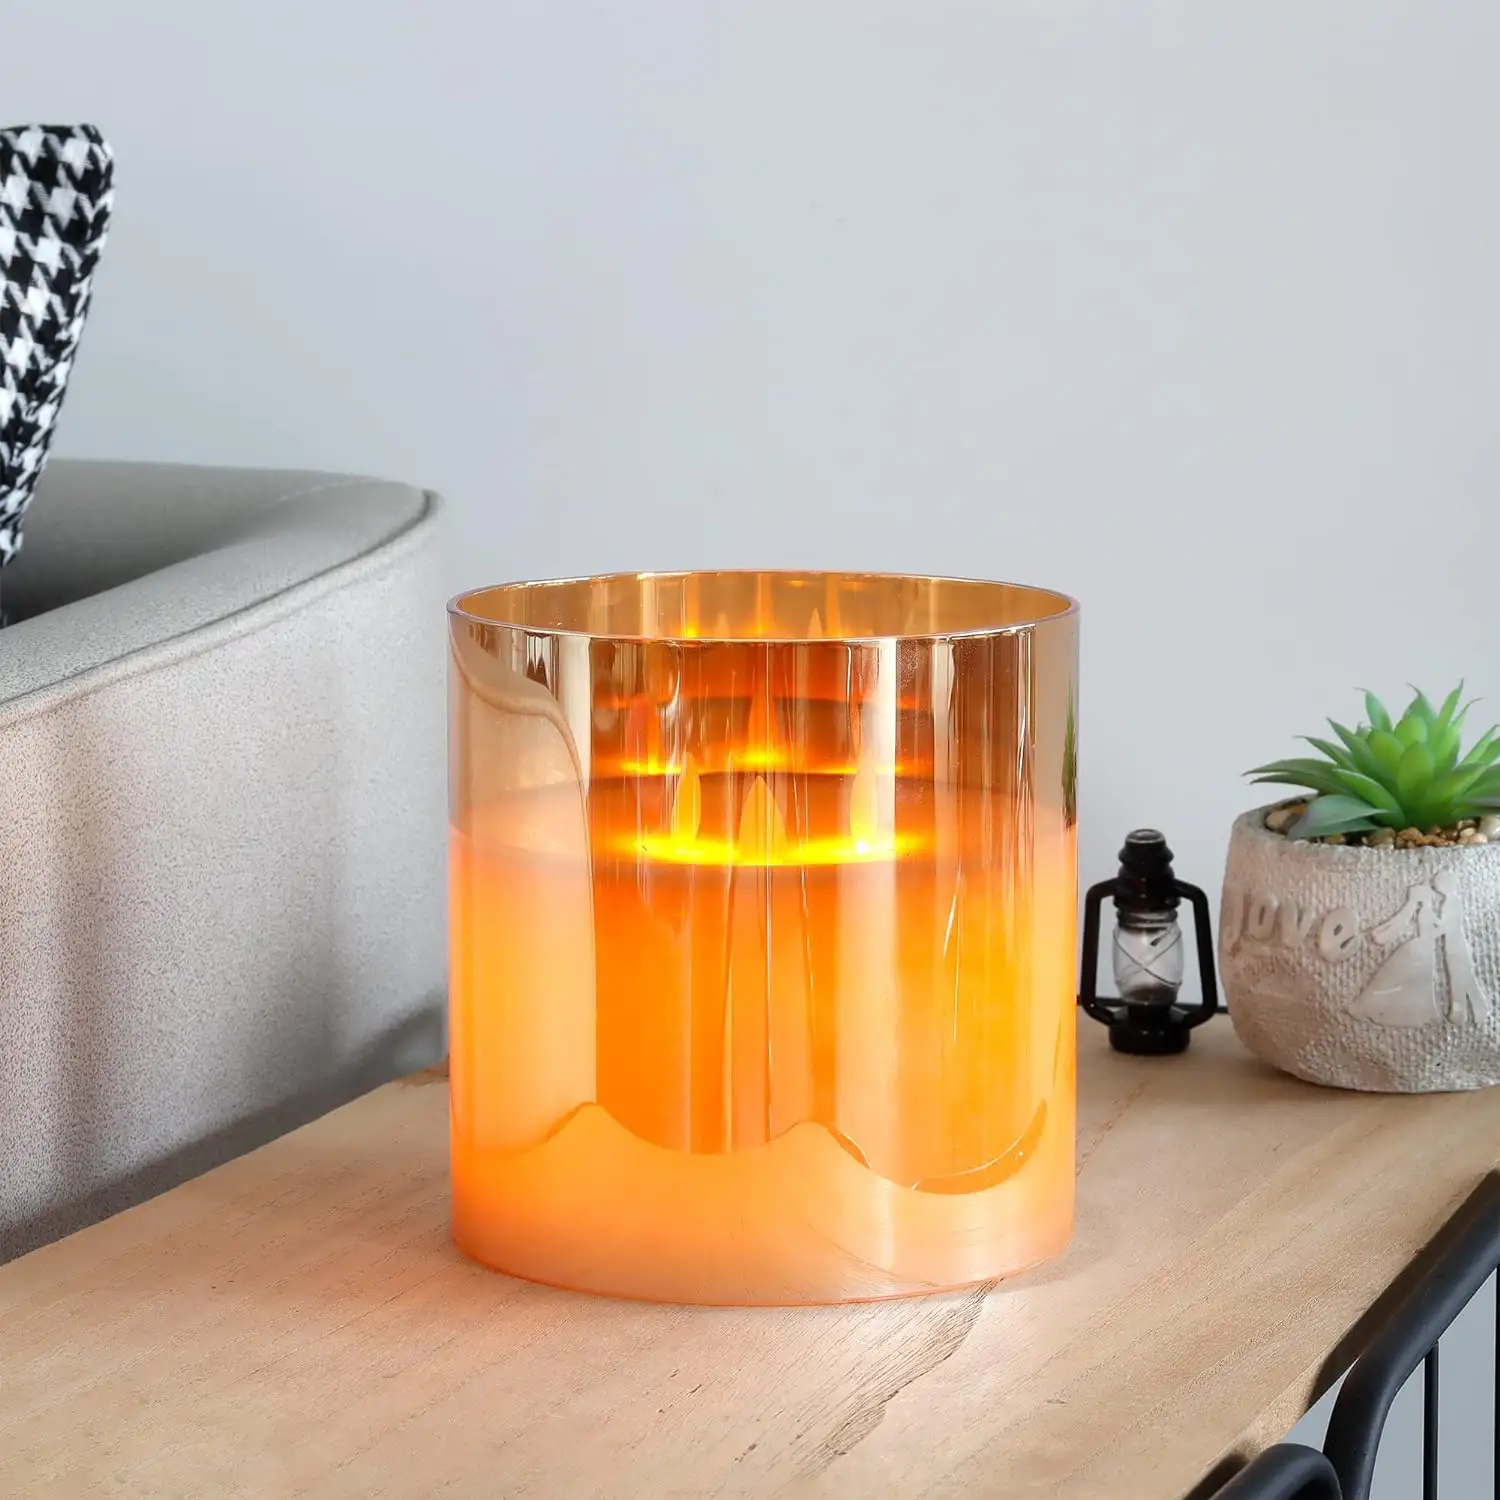 Lilin bertenaga baterai 3 sumbu, dengan pengatur waktu lilin tanpa api simulasi 3D pilar kaca lampu lilin LED